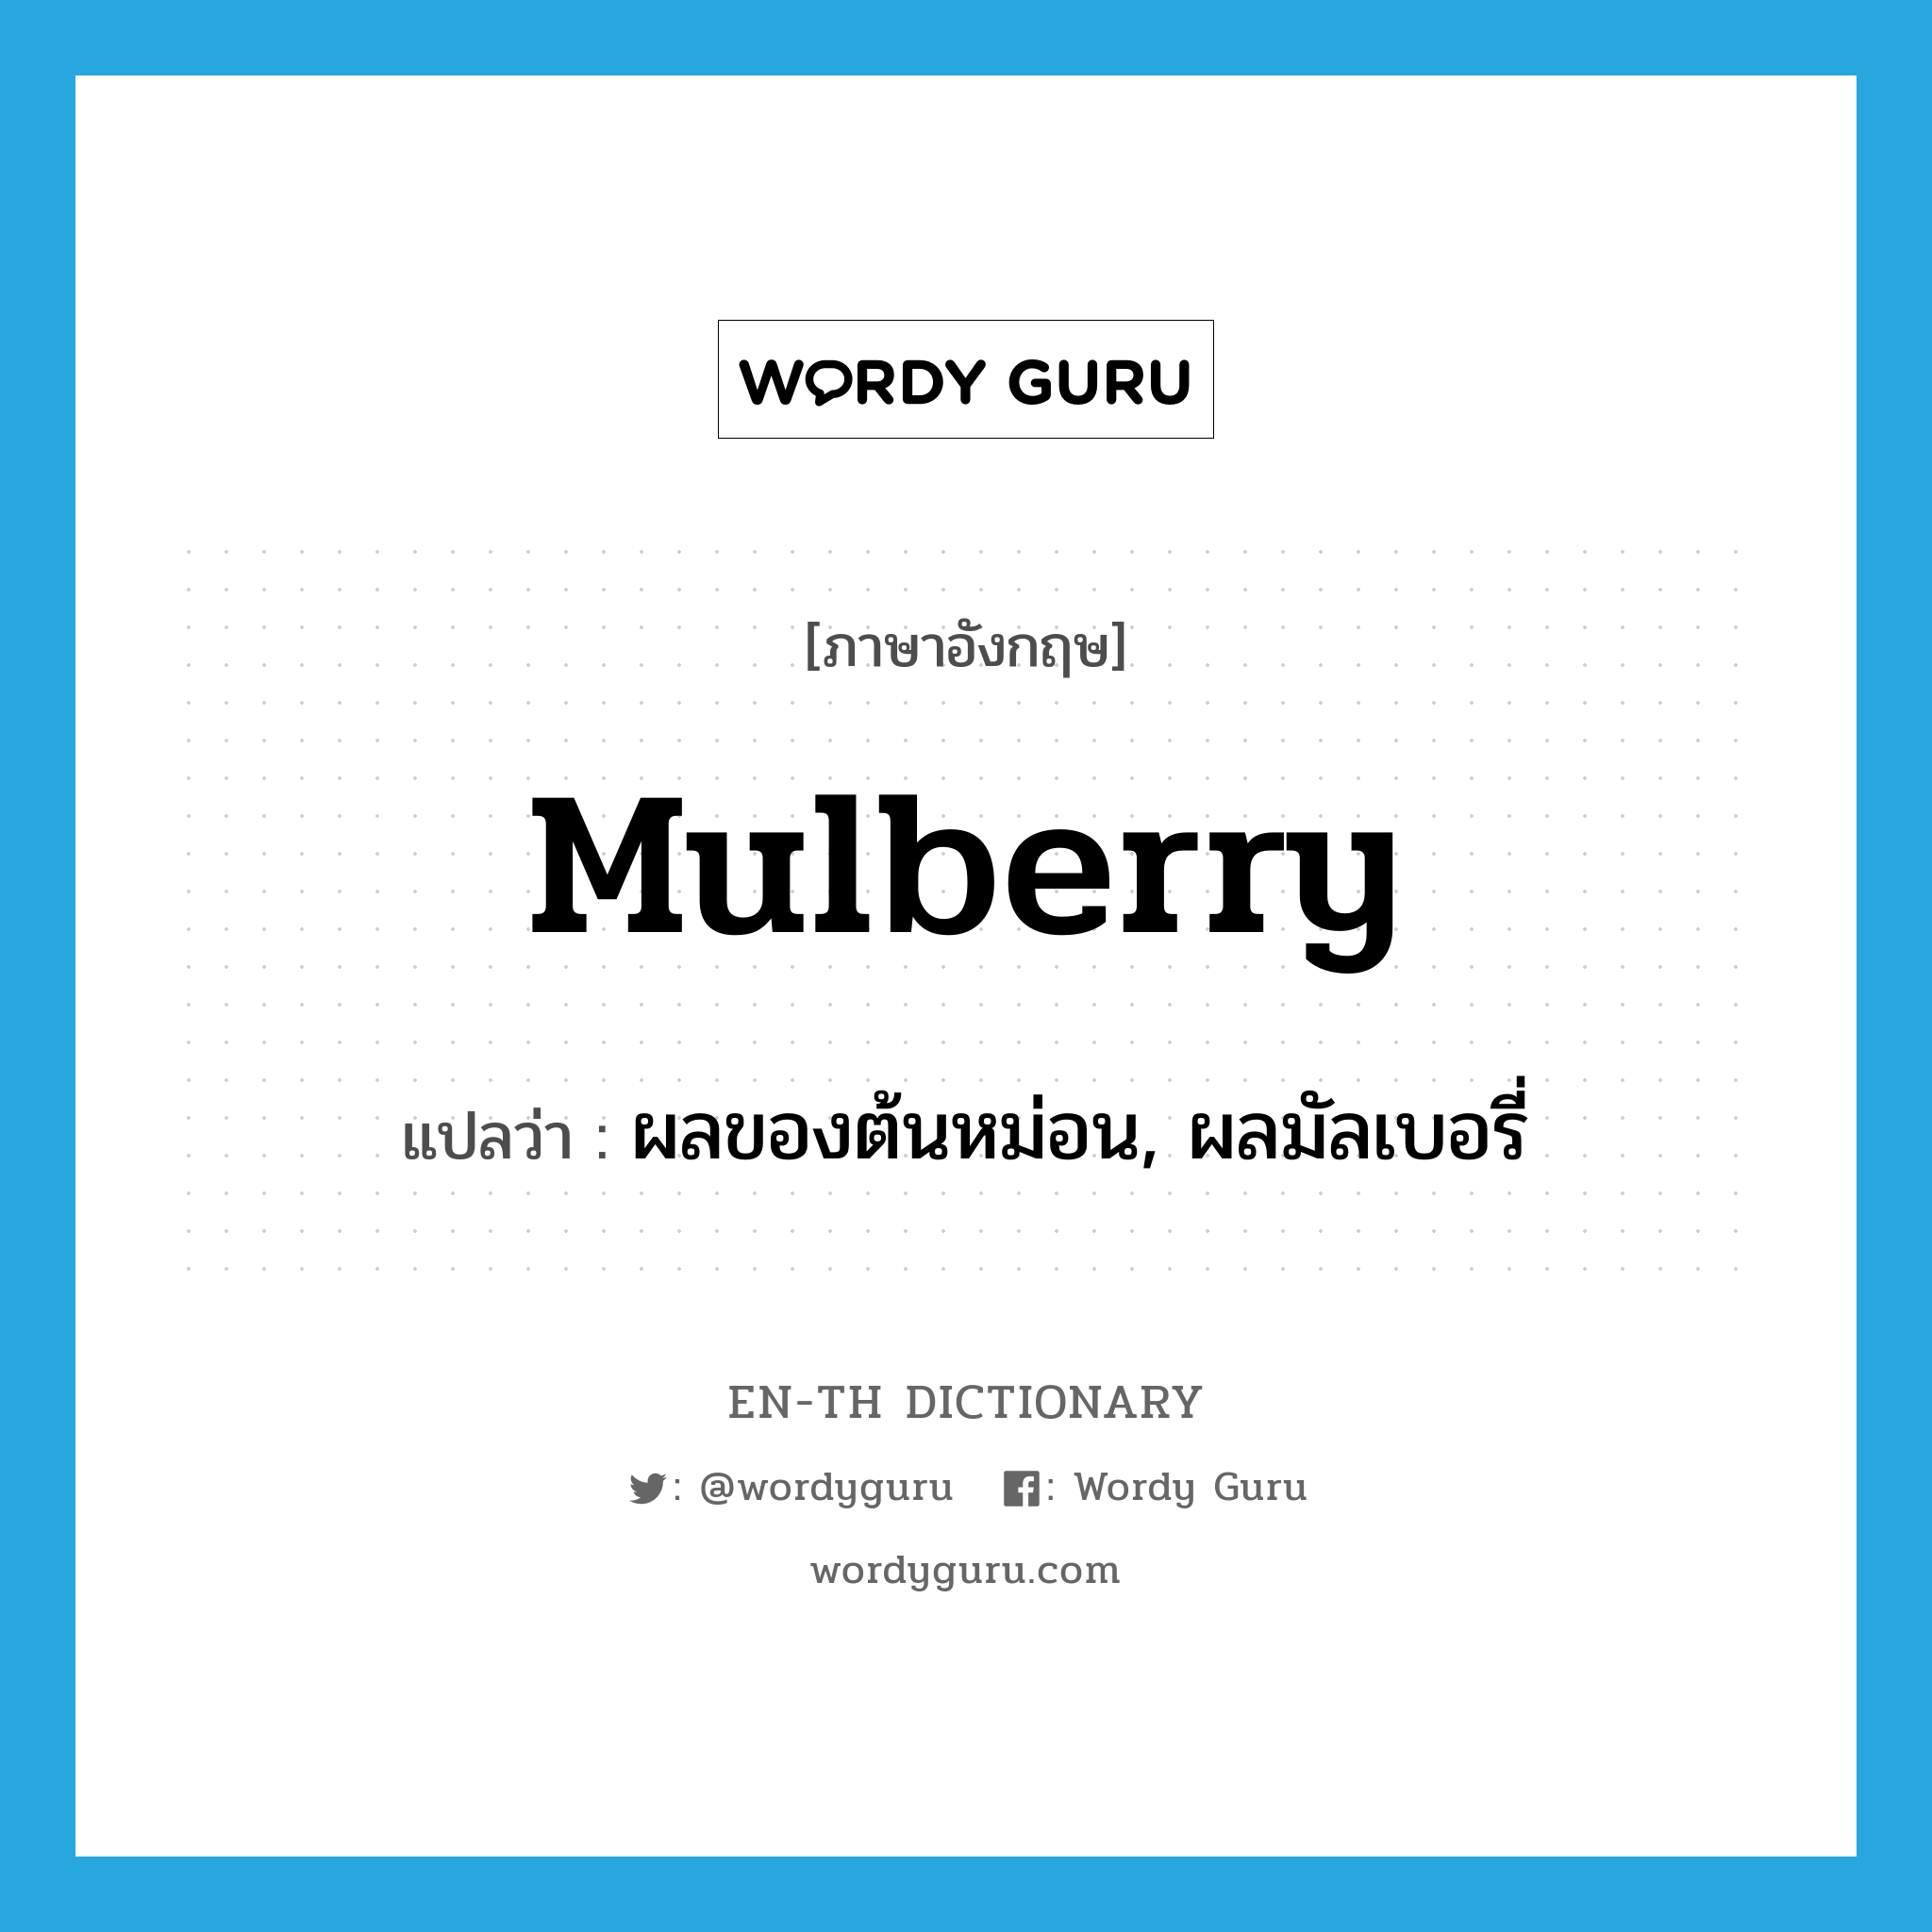 ผลของต้นหม่อน, ผลมัลเบอรี่ ภาษาอังกฤษ?, คำศัพท์ภาษาอังกฤษ ผลของต้นหม่อน, ผลมัลเบอรี่ แปลว่า mulberry ประเภท N หมวด N